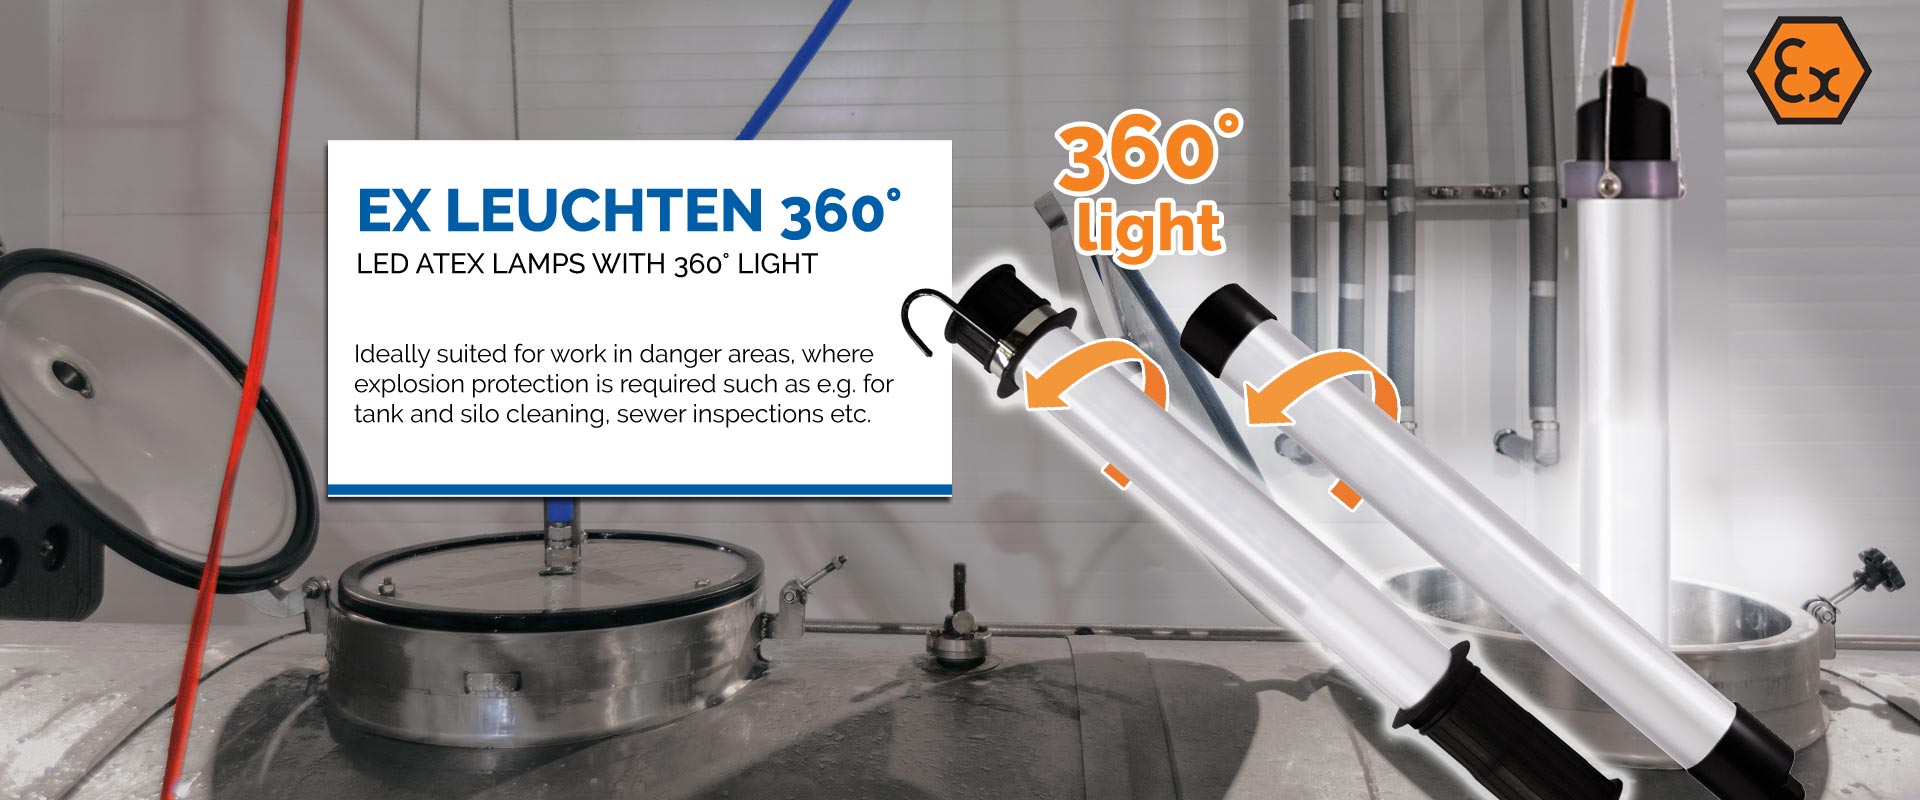 KIRA Leuchten GmbH | Manufacturer of LED lighting and ATEX lights - KIRA  Leuchten